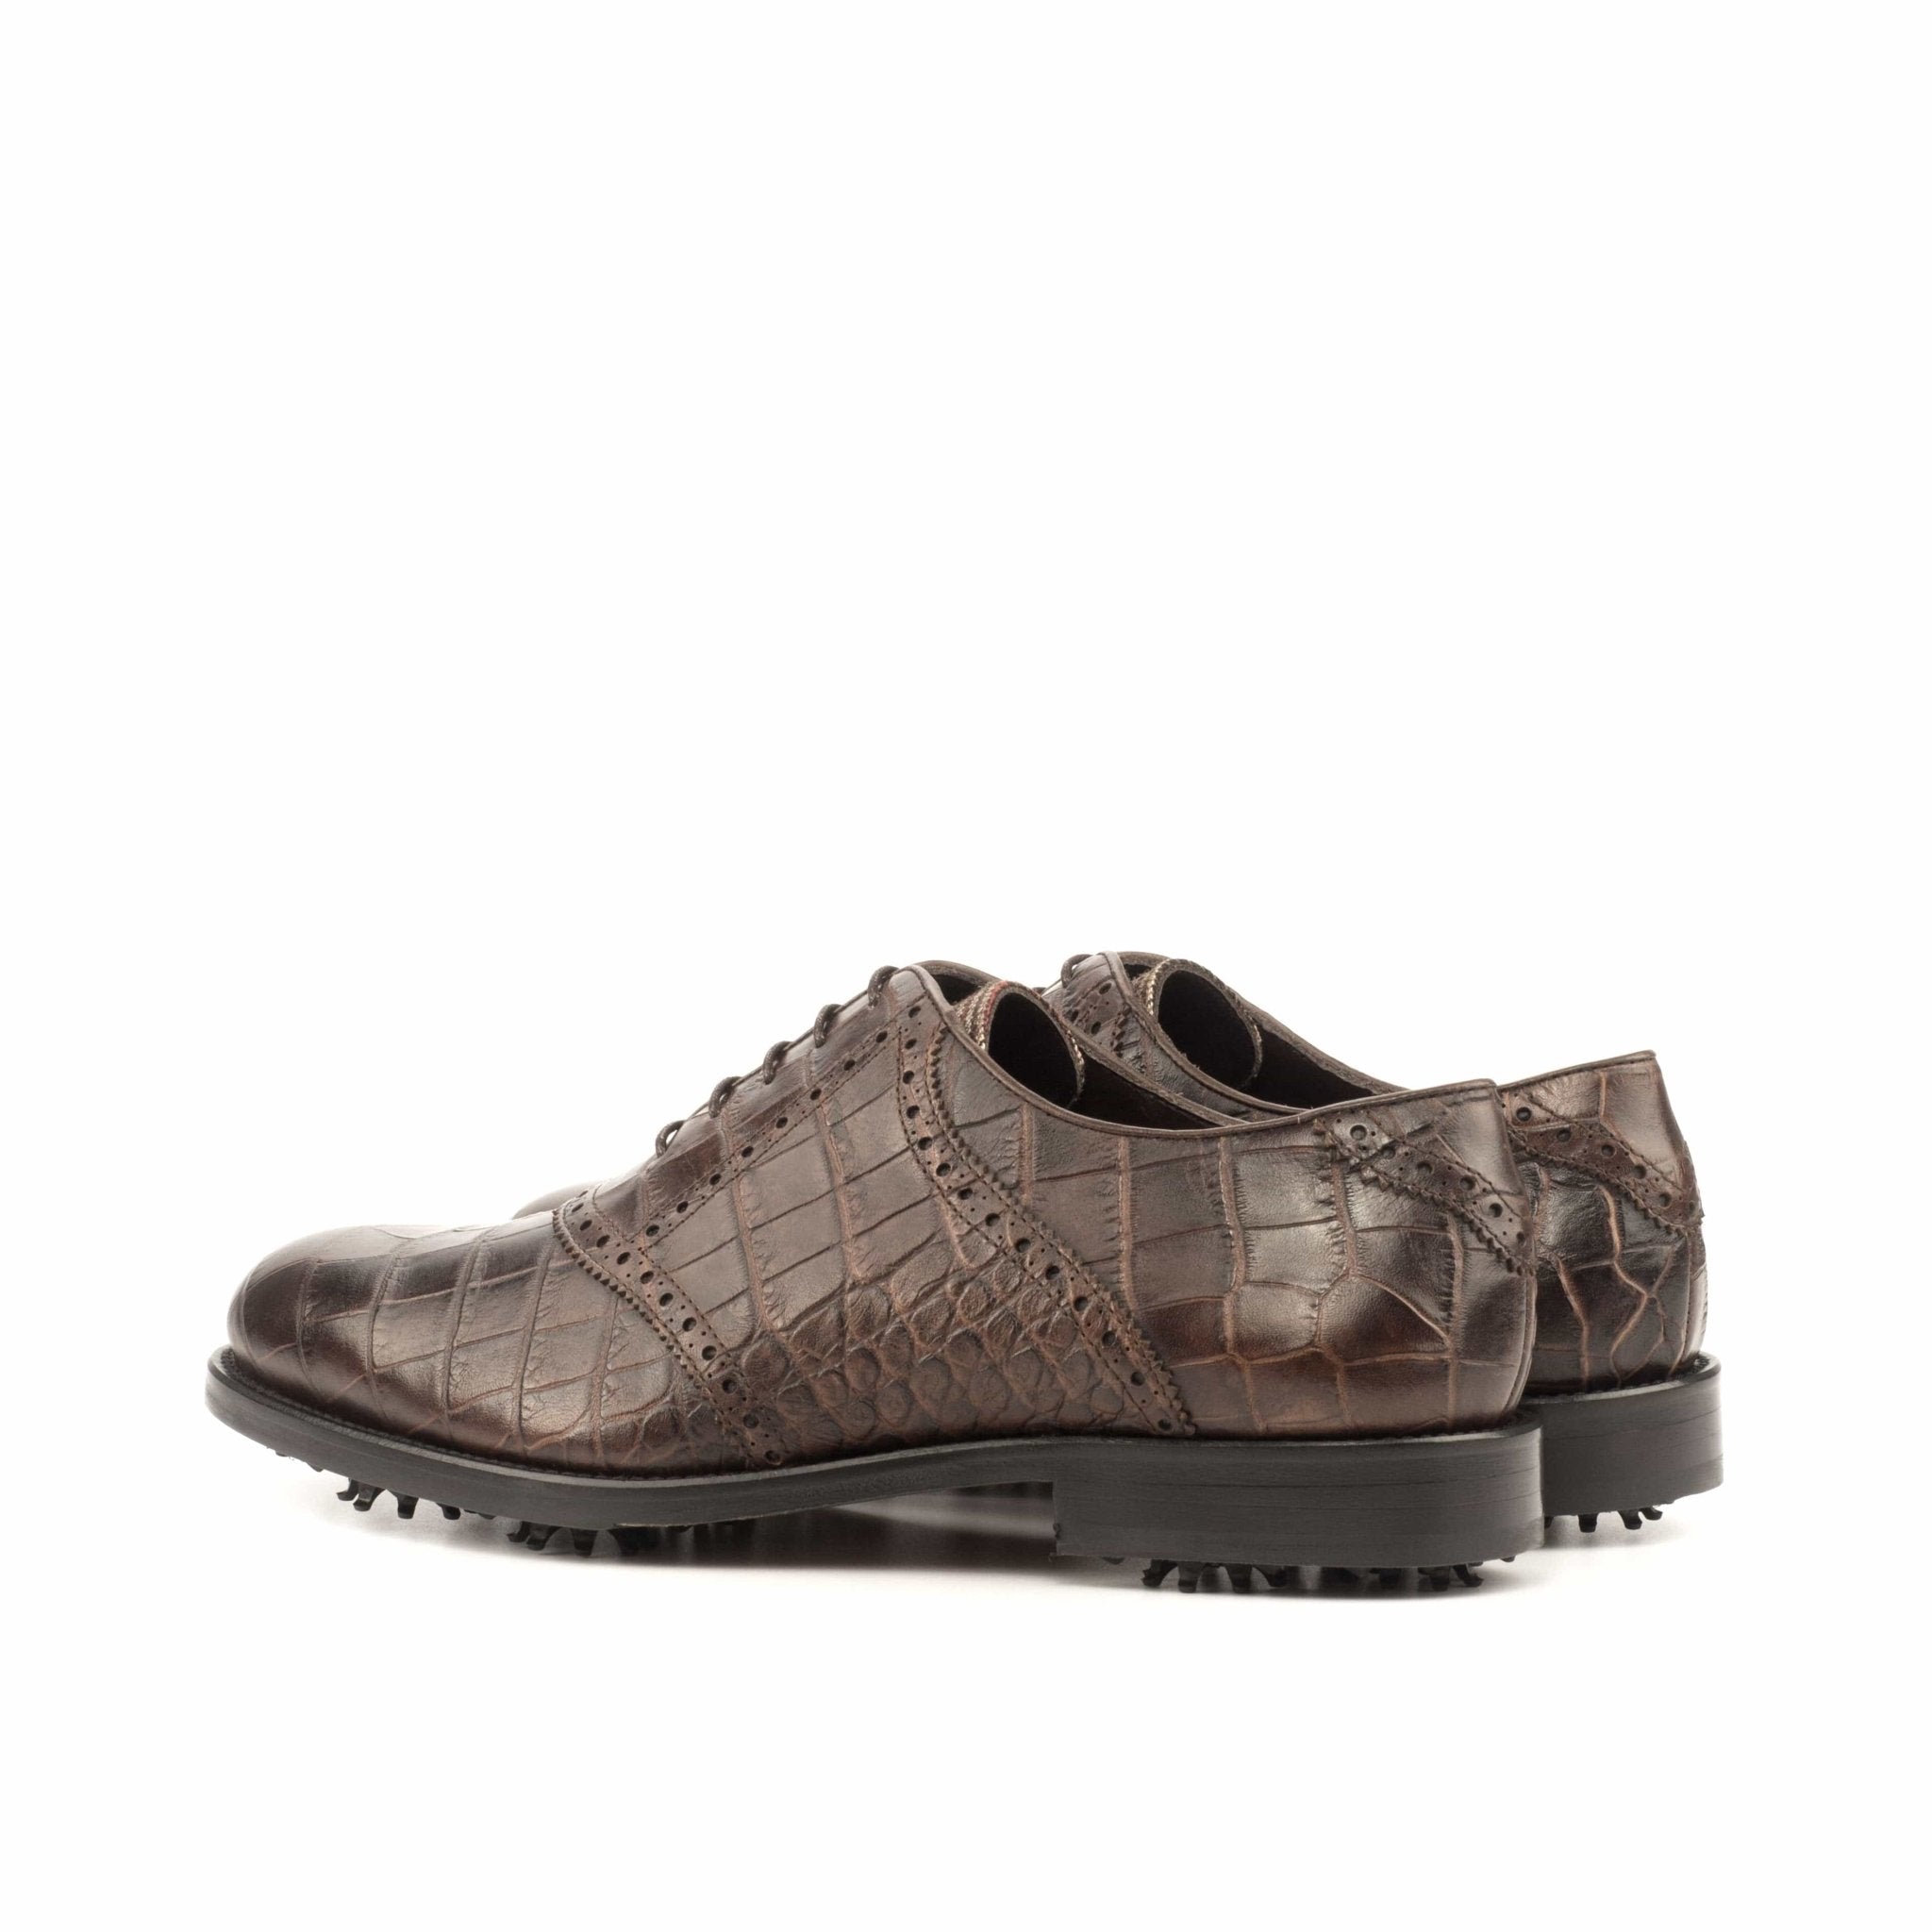 Brown Croc Print Saddle Golf Shoes - Maison de Kingsley Couture Harmonie et Fureur Spain